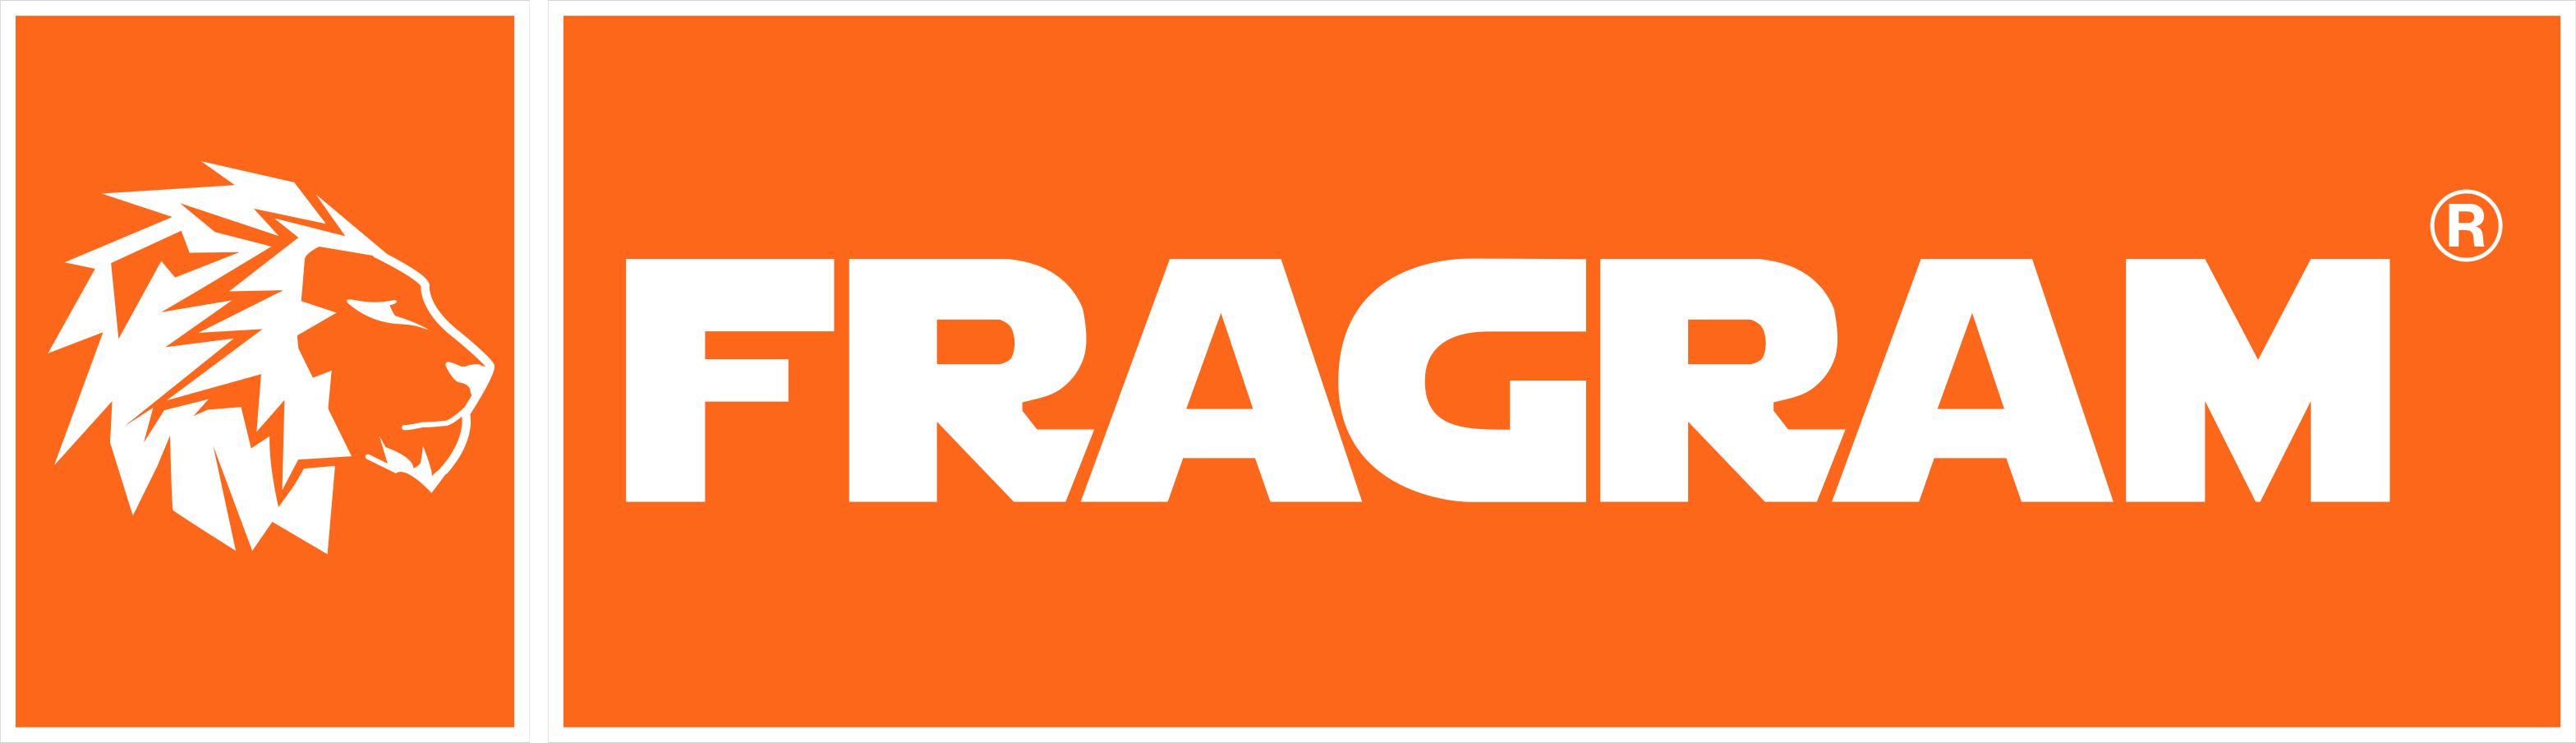 Brand > Fragram